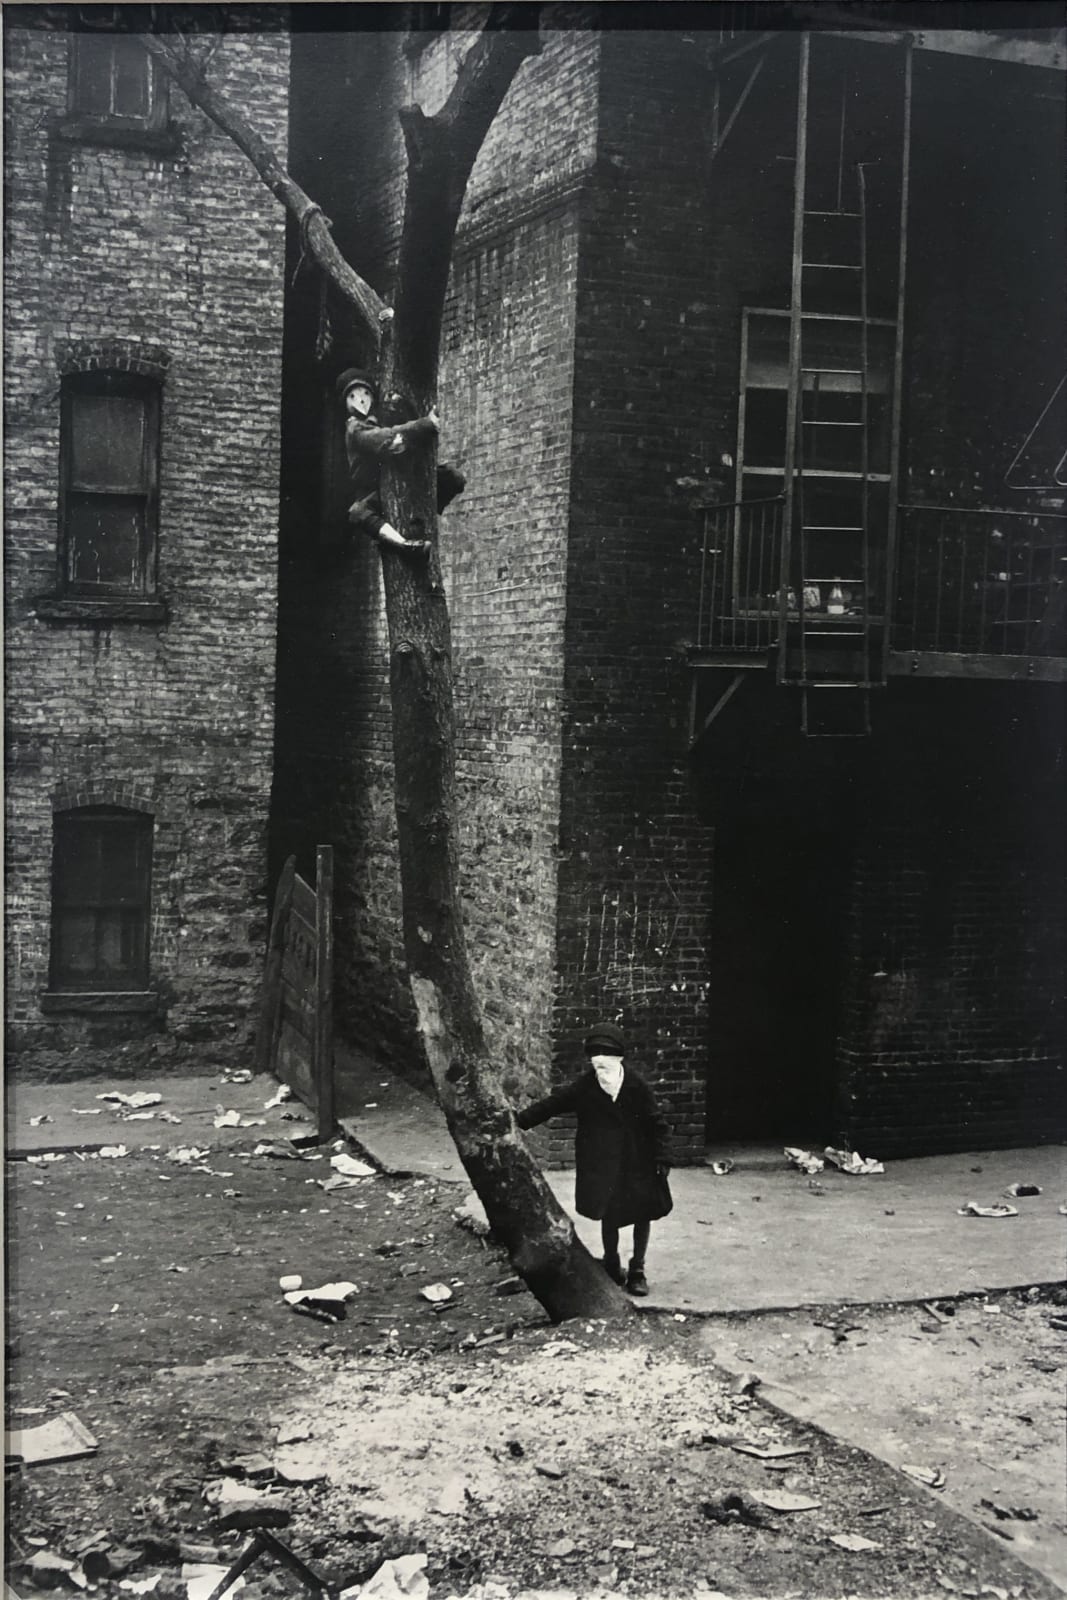 Helen Levitt, Untitled (Masks in Tree), New York City, New York, c. 1940